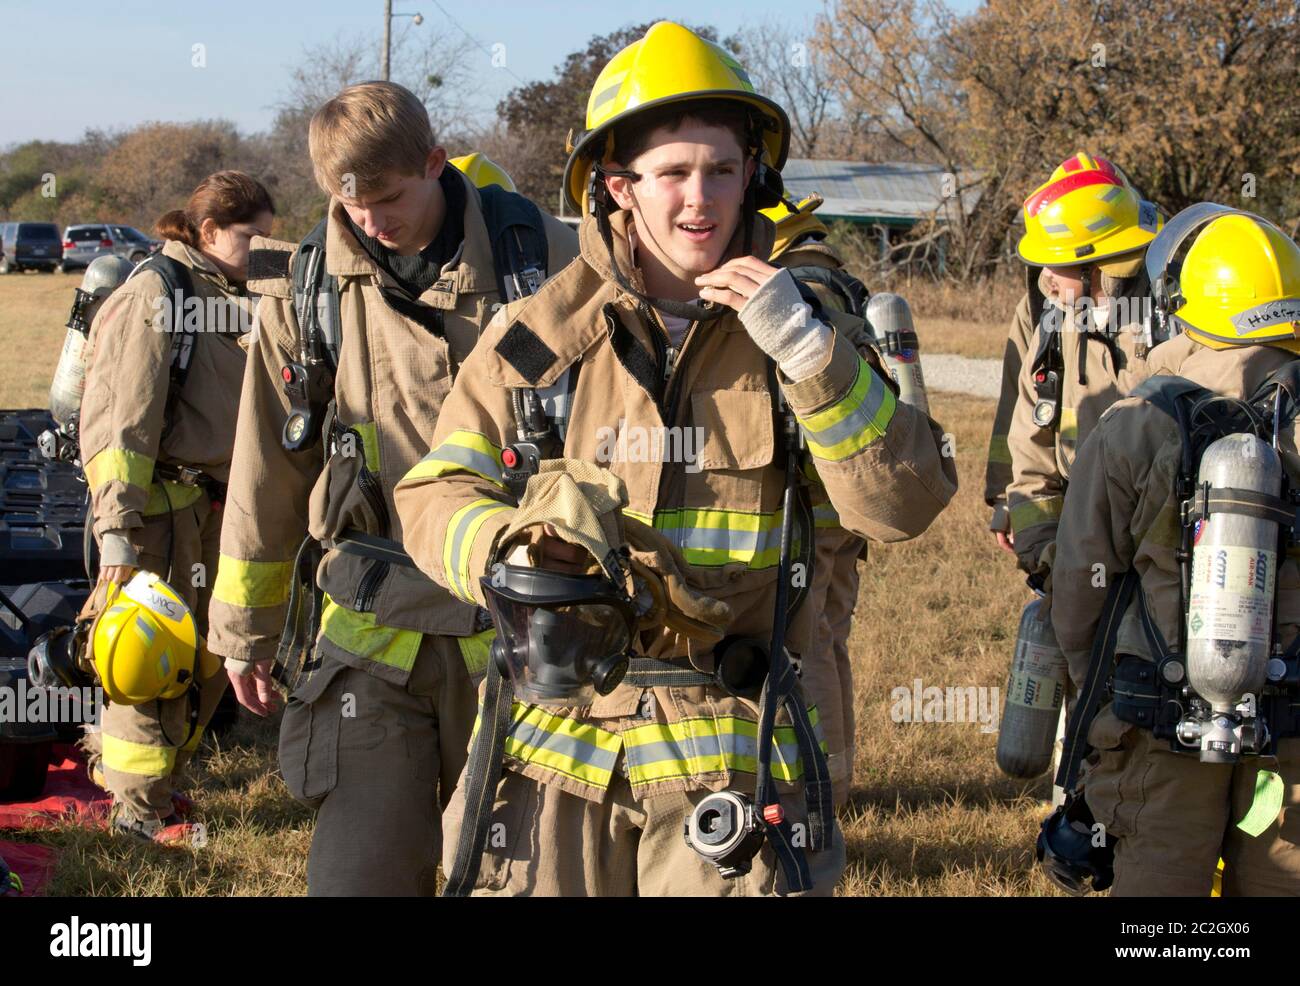 Austin Texas, USA, Februar 4 2014: Schüler der LBJ High School Fire Training Academy mit Wahlausrüstung bereiten sich auf eine Trainingsübung vor. Studierende, die das zweijährige Programm absolvieren, sind für die EMT-Zertifizierung als Notarzt qualifiziert und verfügen über fortgeschrittene Fähigkeiten zur Brandbekämpfung. ©Bob Daemmrich Stockfoto